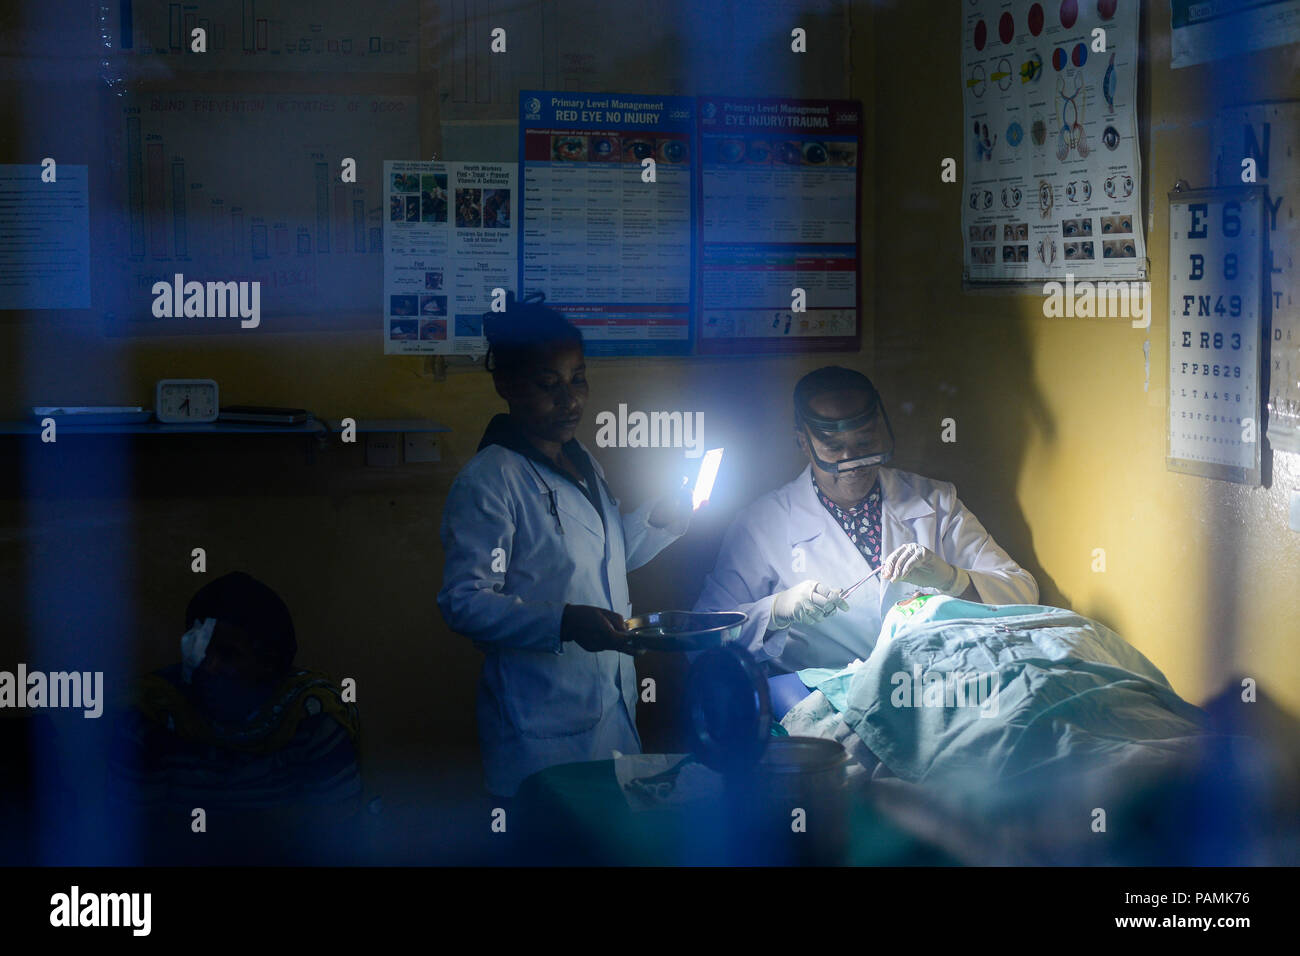 CENTRE de santé catholique ETHIOPIA Taza, opération oculaire avec torche pendant la coupure de courant Banque D'Images